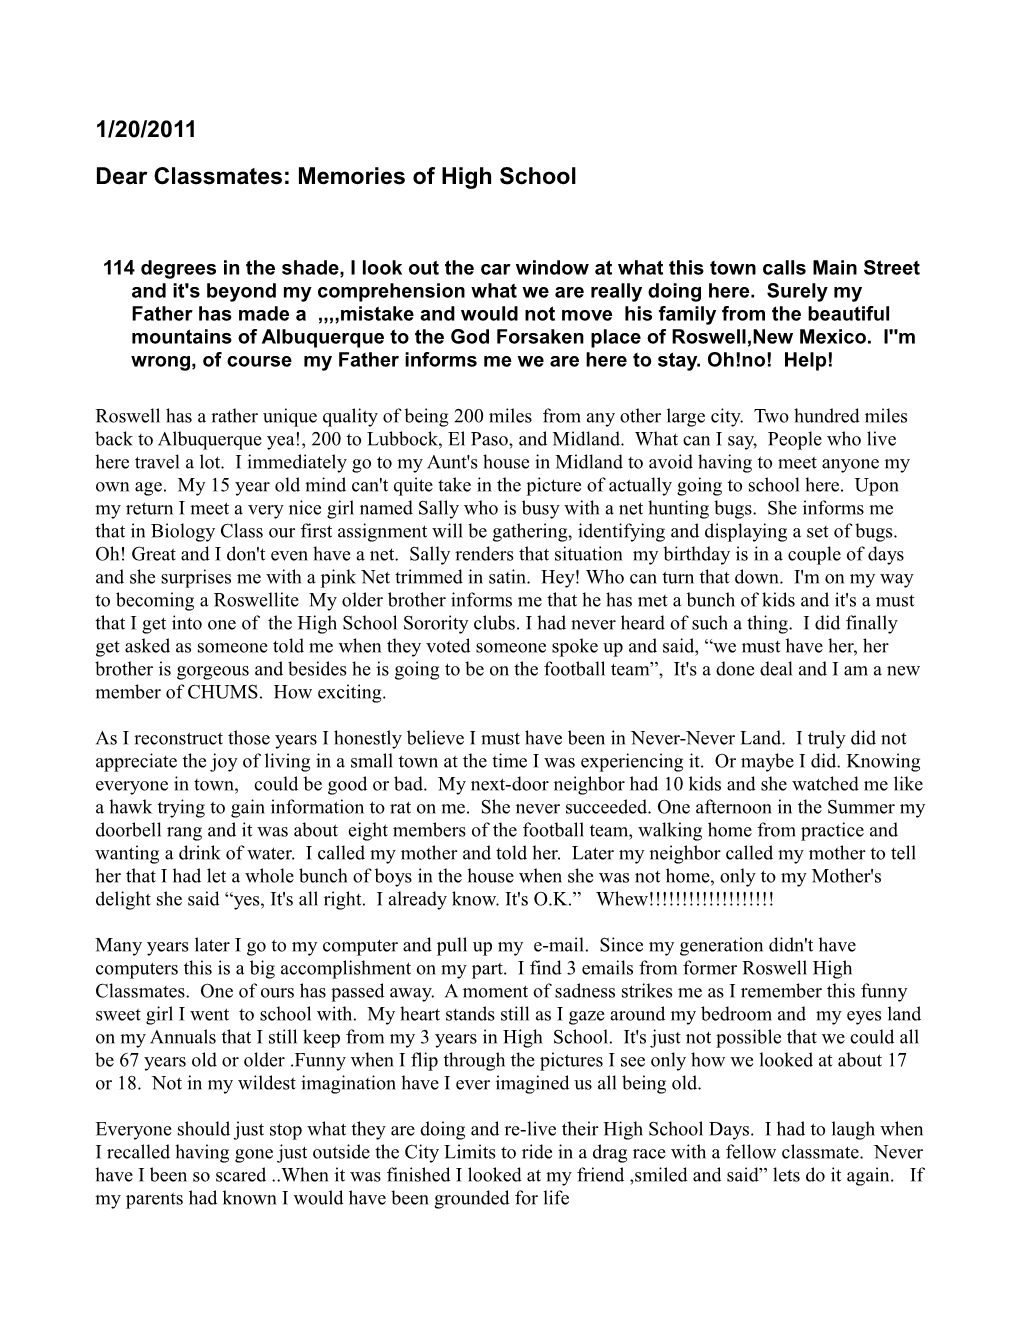 Dear Classmates: Memories of High School